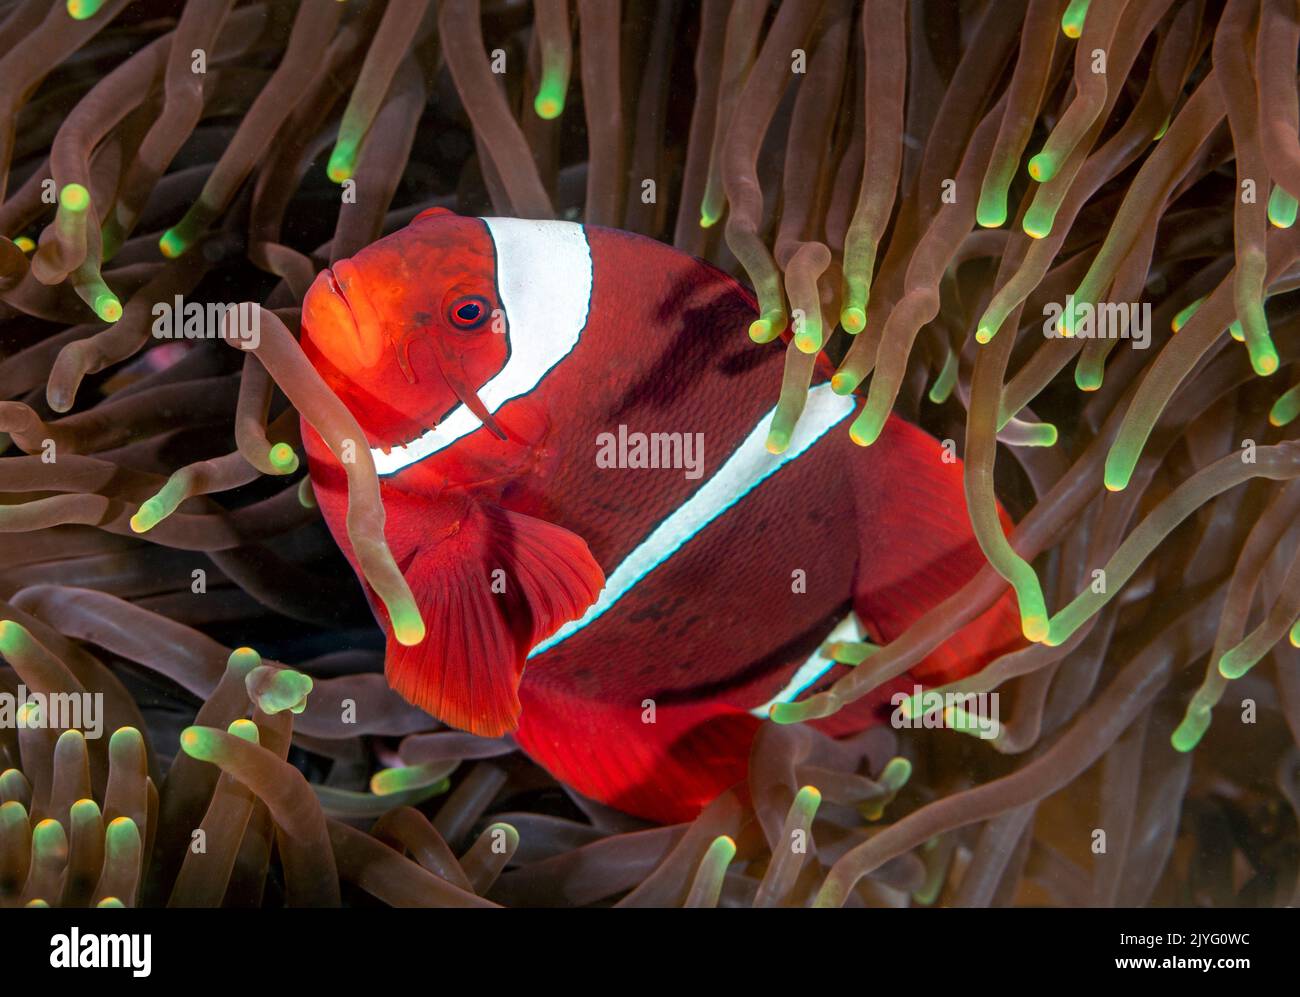 Spinecheek anemonefish, Premnas biaculeatus, Raja Ampat Indonesia. Stock Photo